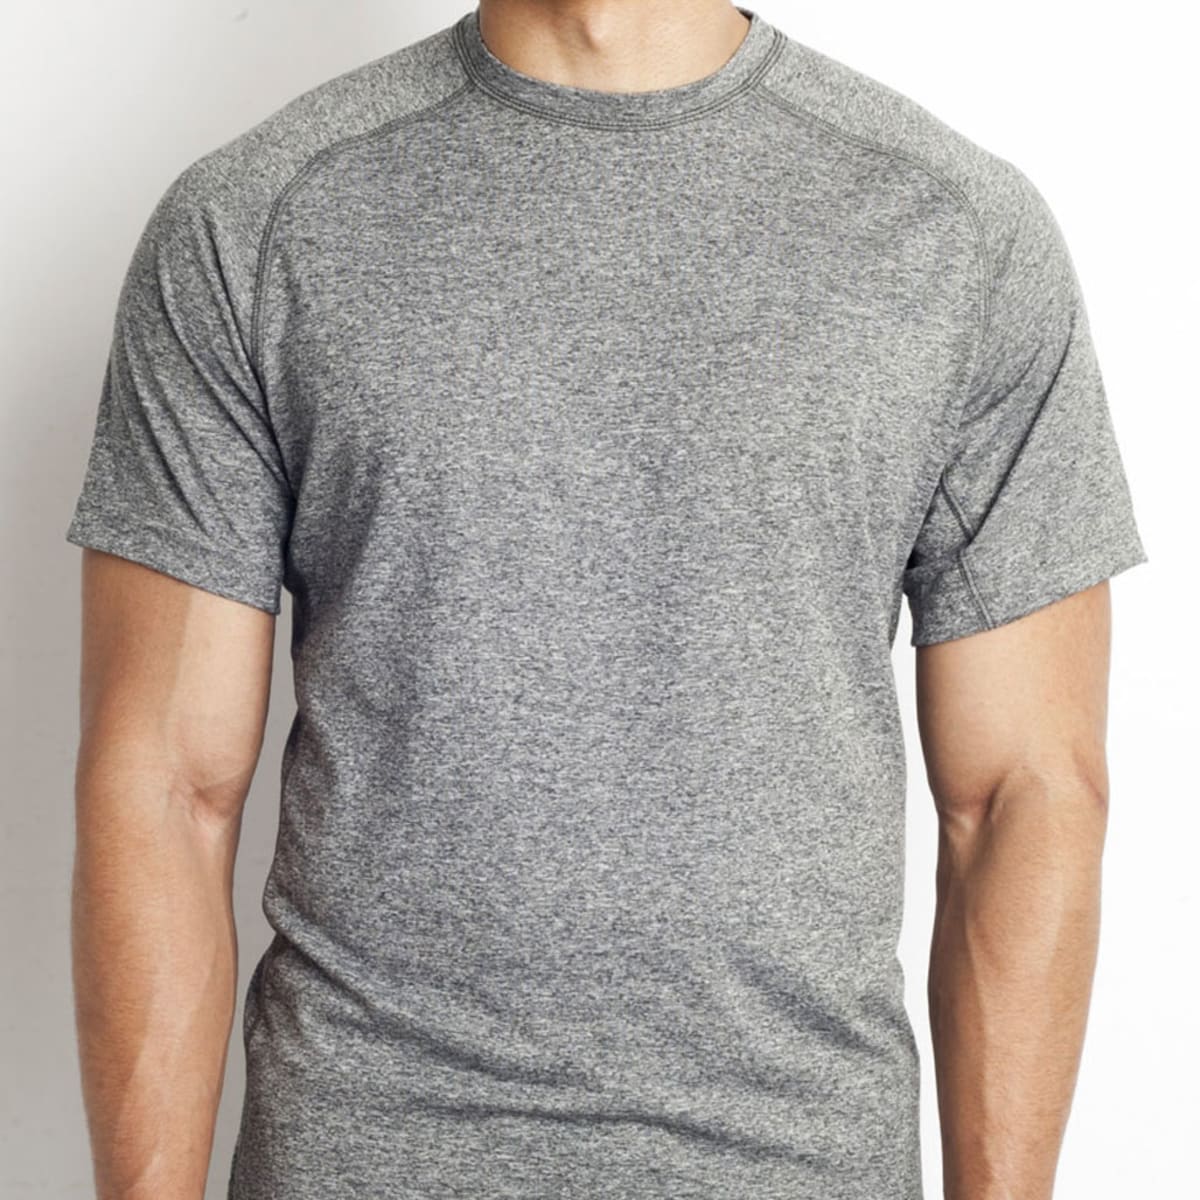 Voordracht meditatie uitzending 10 Best Muscle Fit T-Shirts - Men's Journal